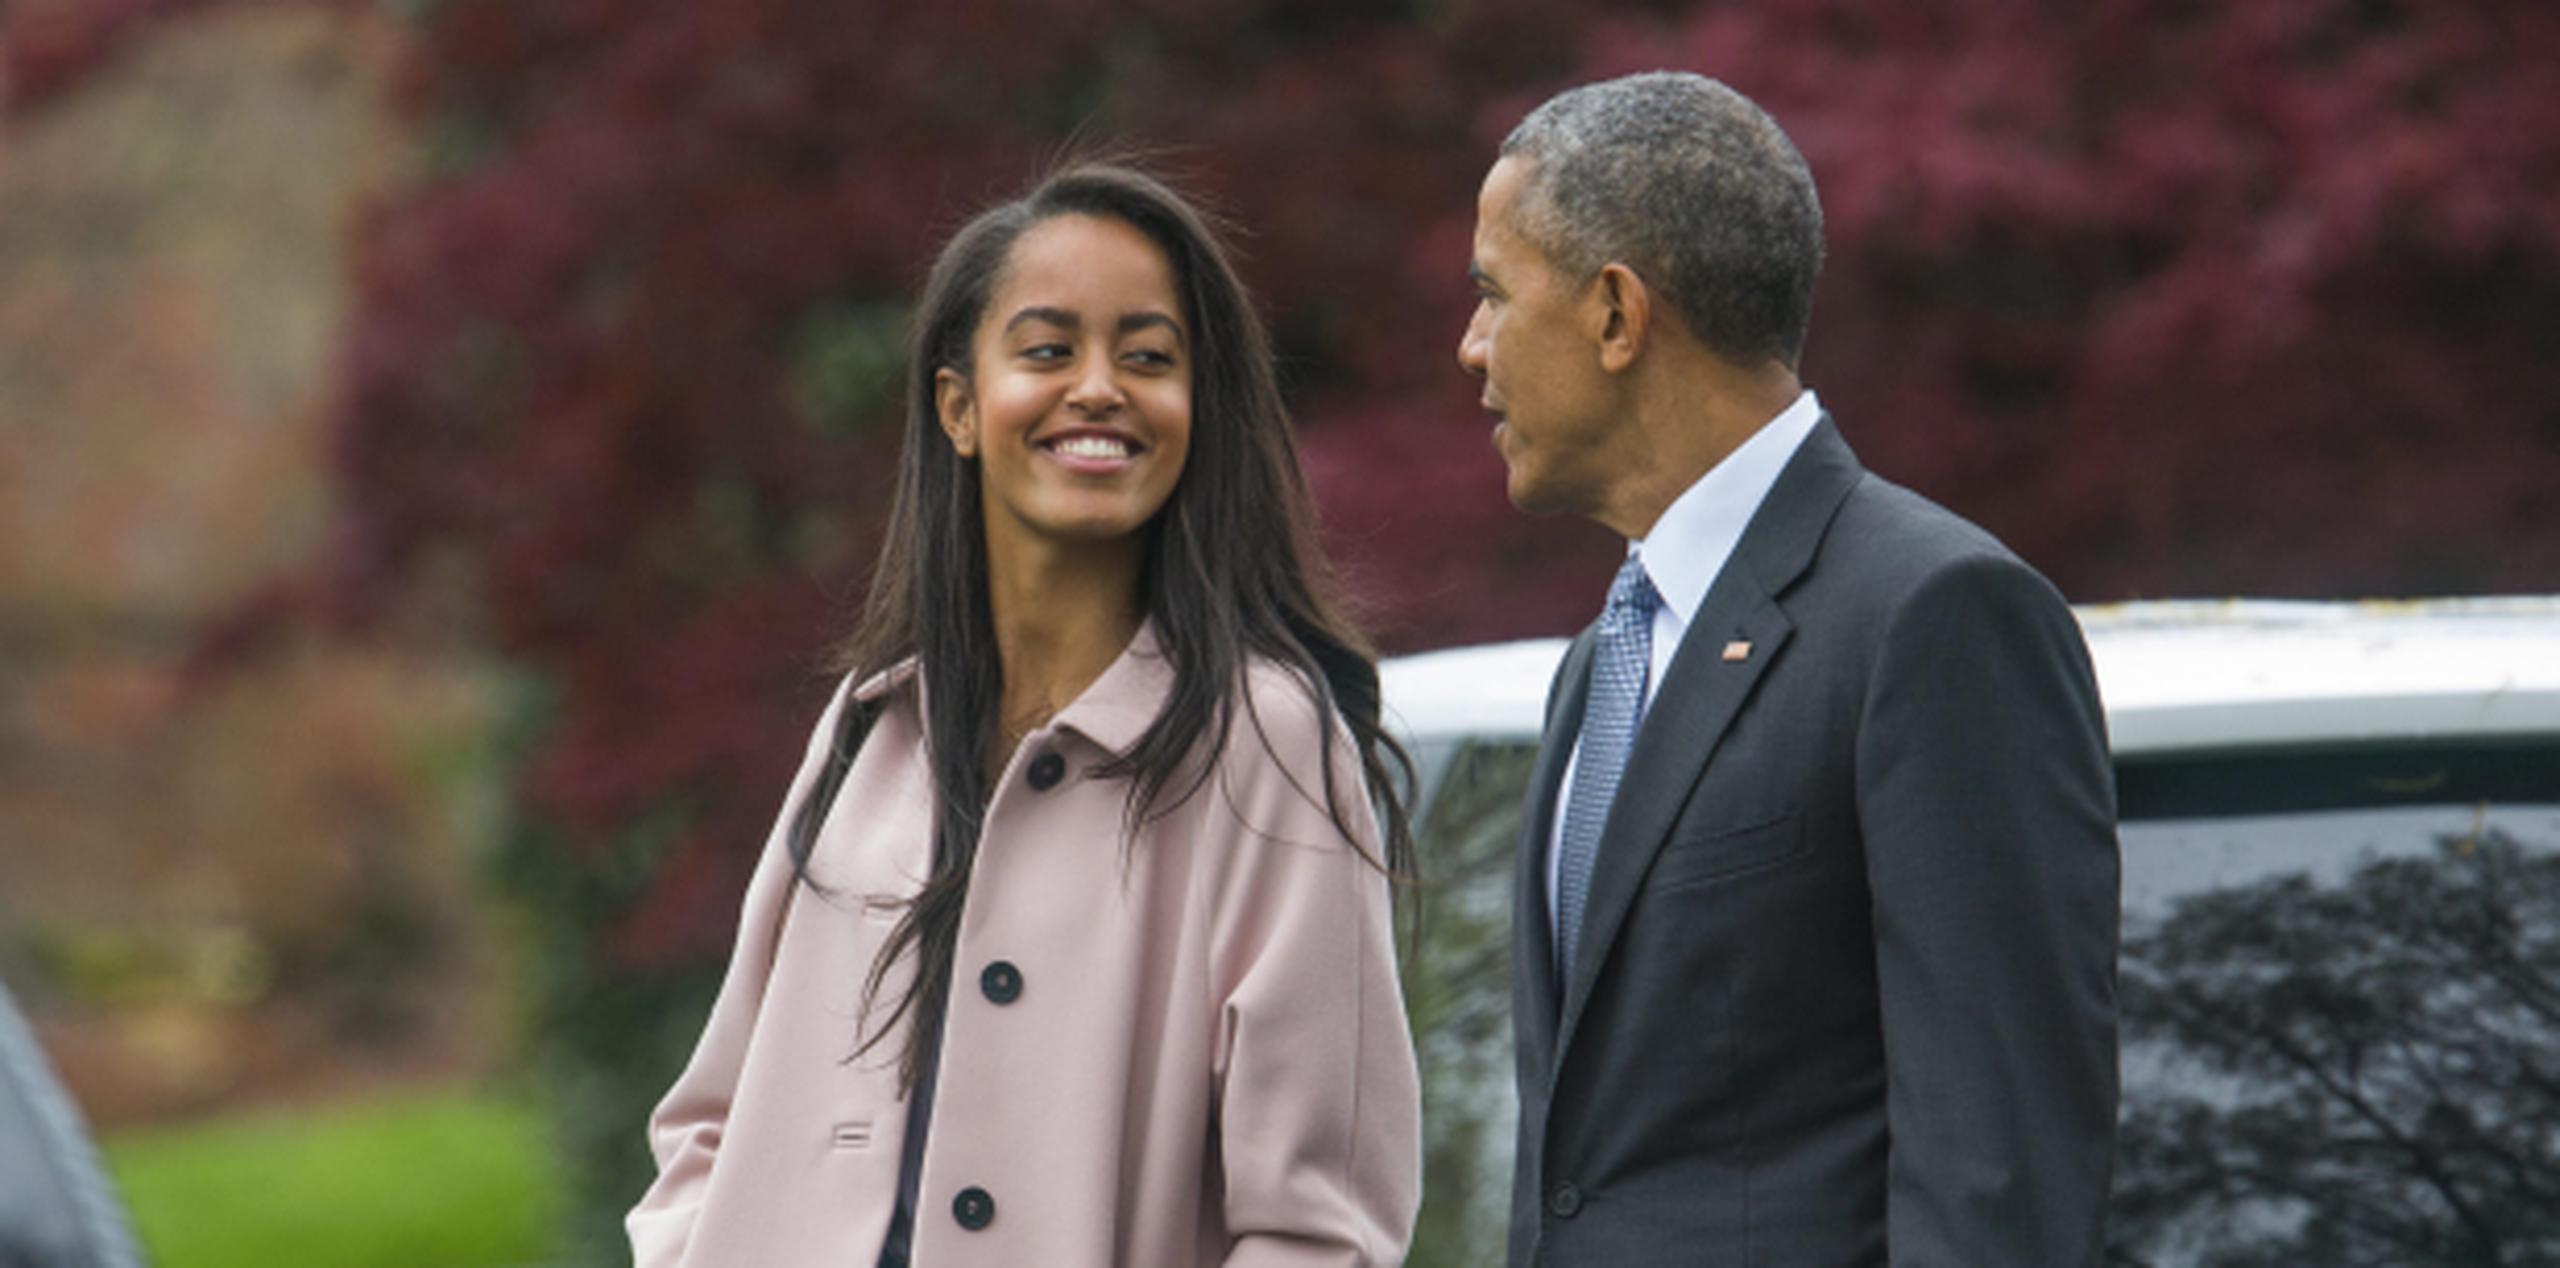 Malia Obama comenzará en otoño de 2017 sus estudios en la universidad de Harvard después de haber disfrutado de un año sabático. (Agencia EFE)